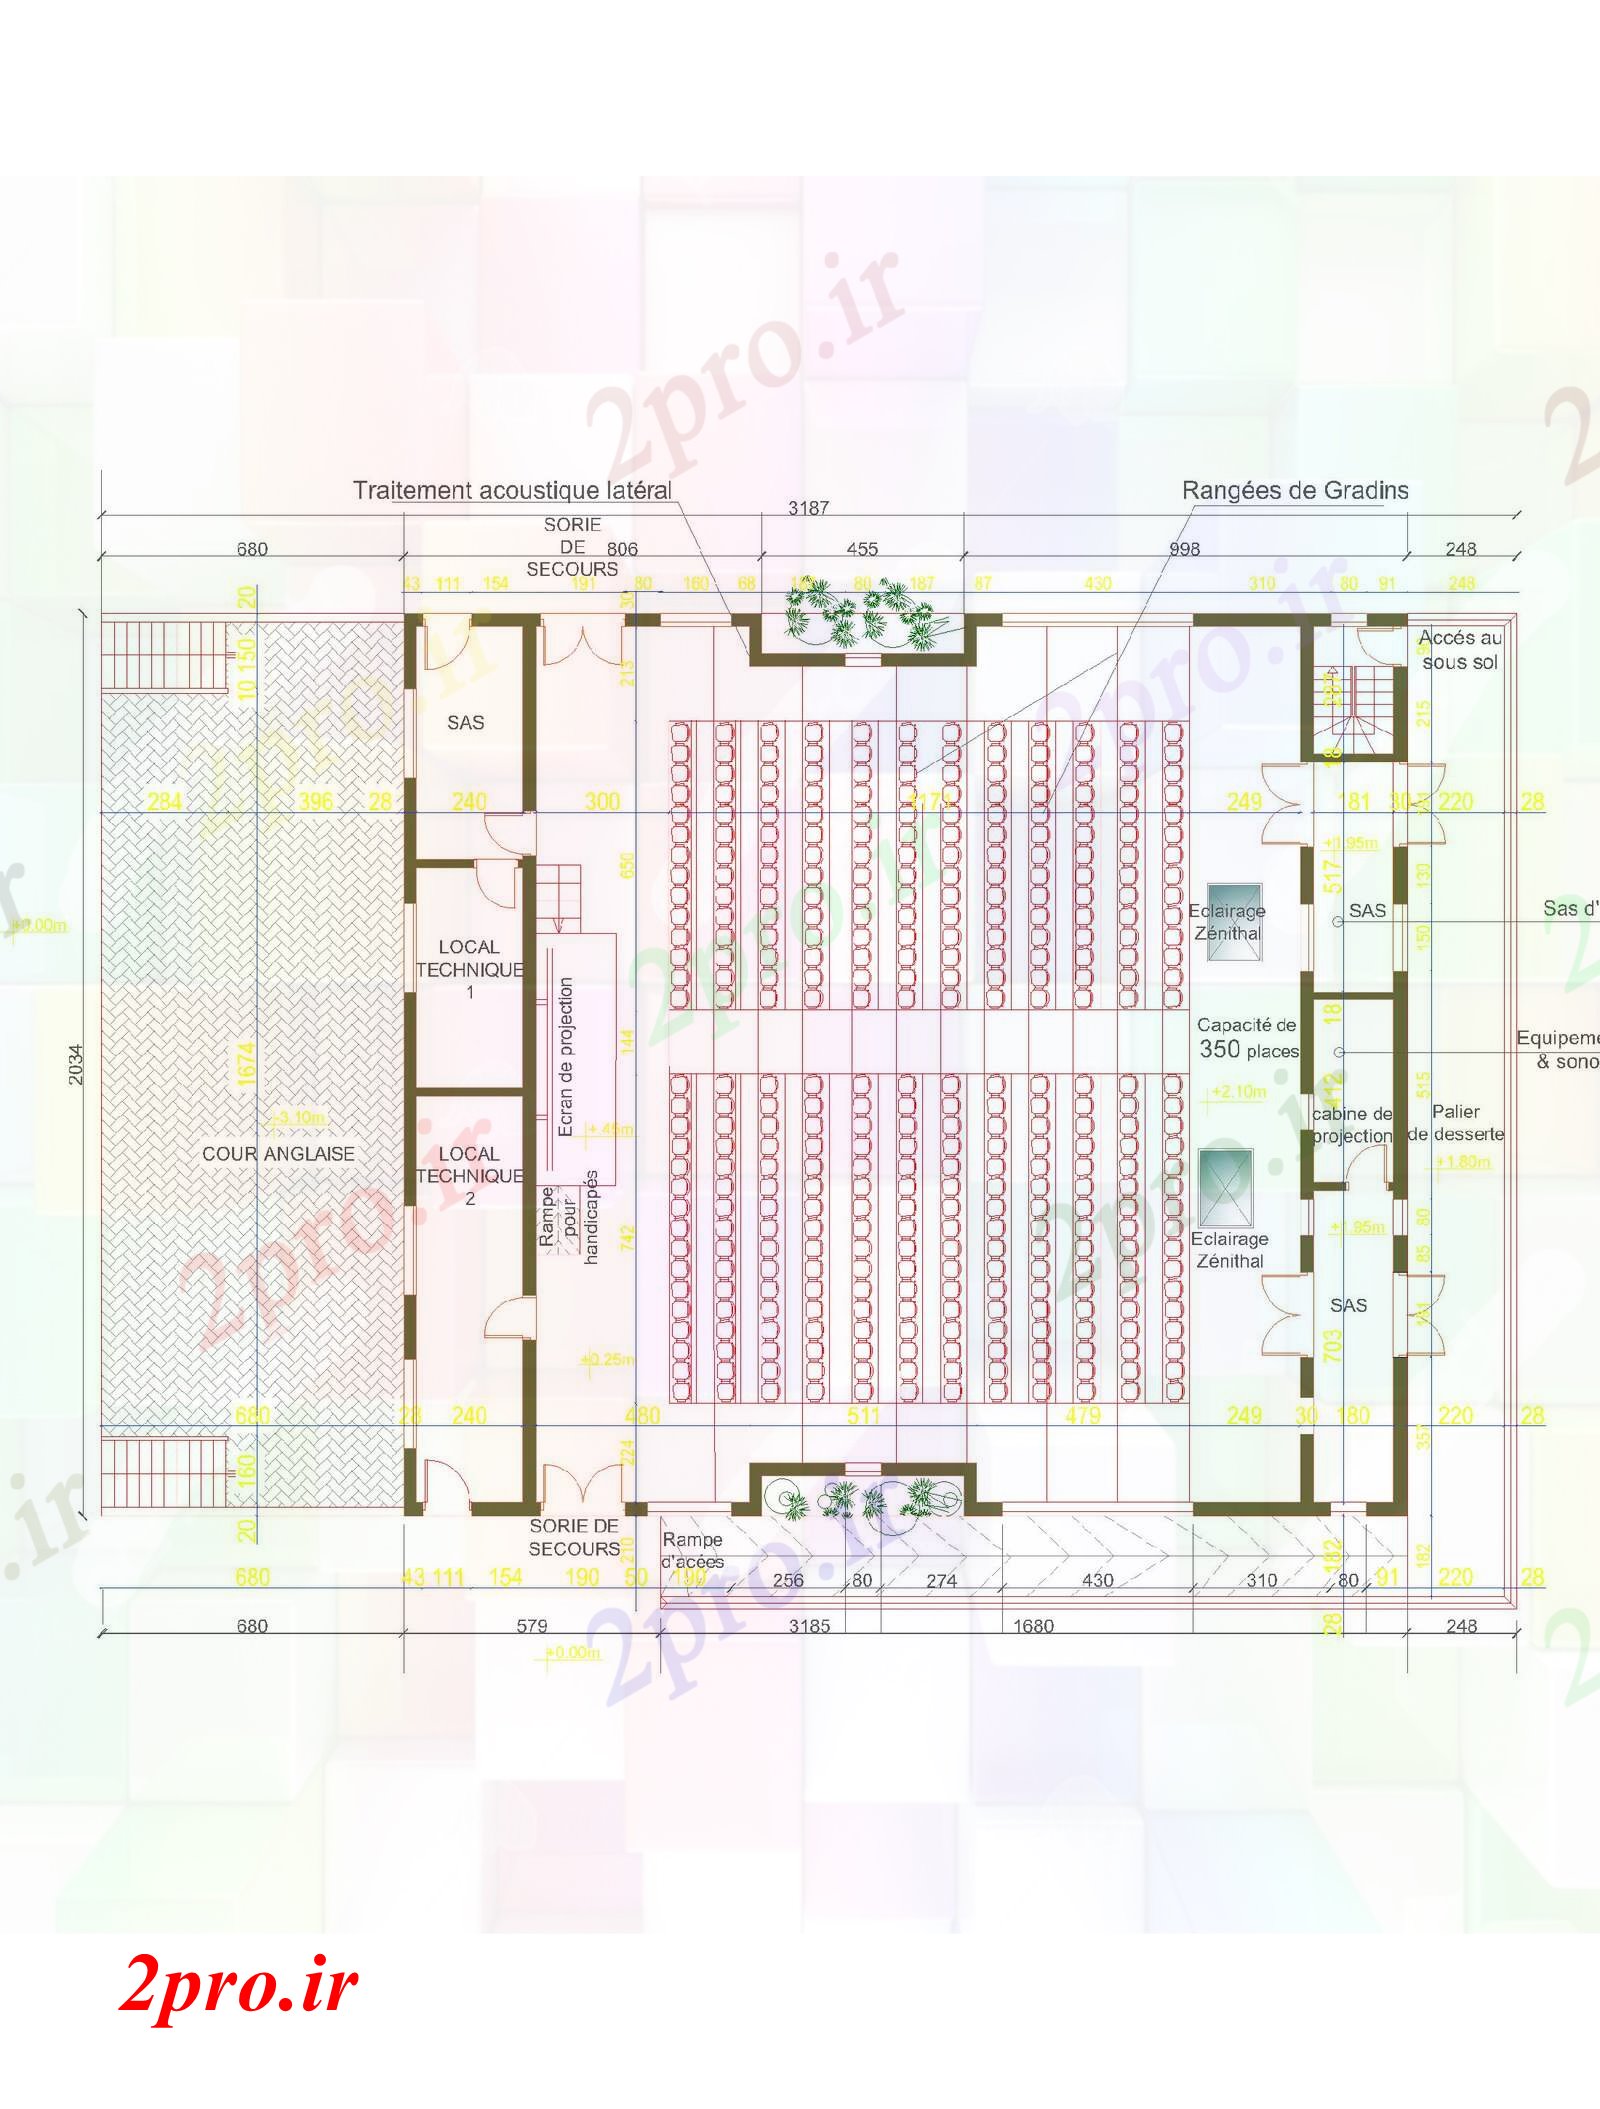 دانلود نقشه تئاتر چند منظوره - سینما - سالن کنفرانس - سالن همایشامفي تئاتر 49 در 54 متر (کد61305)